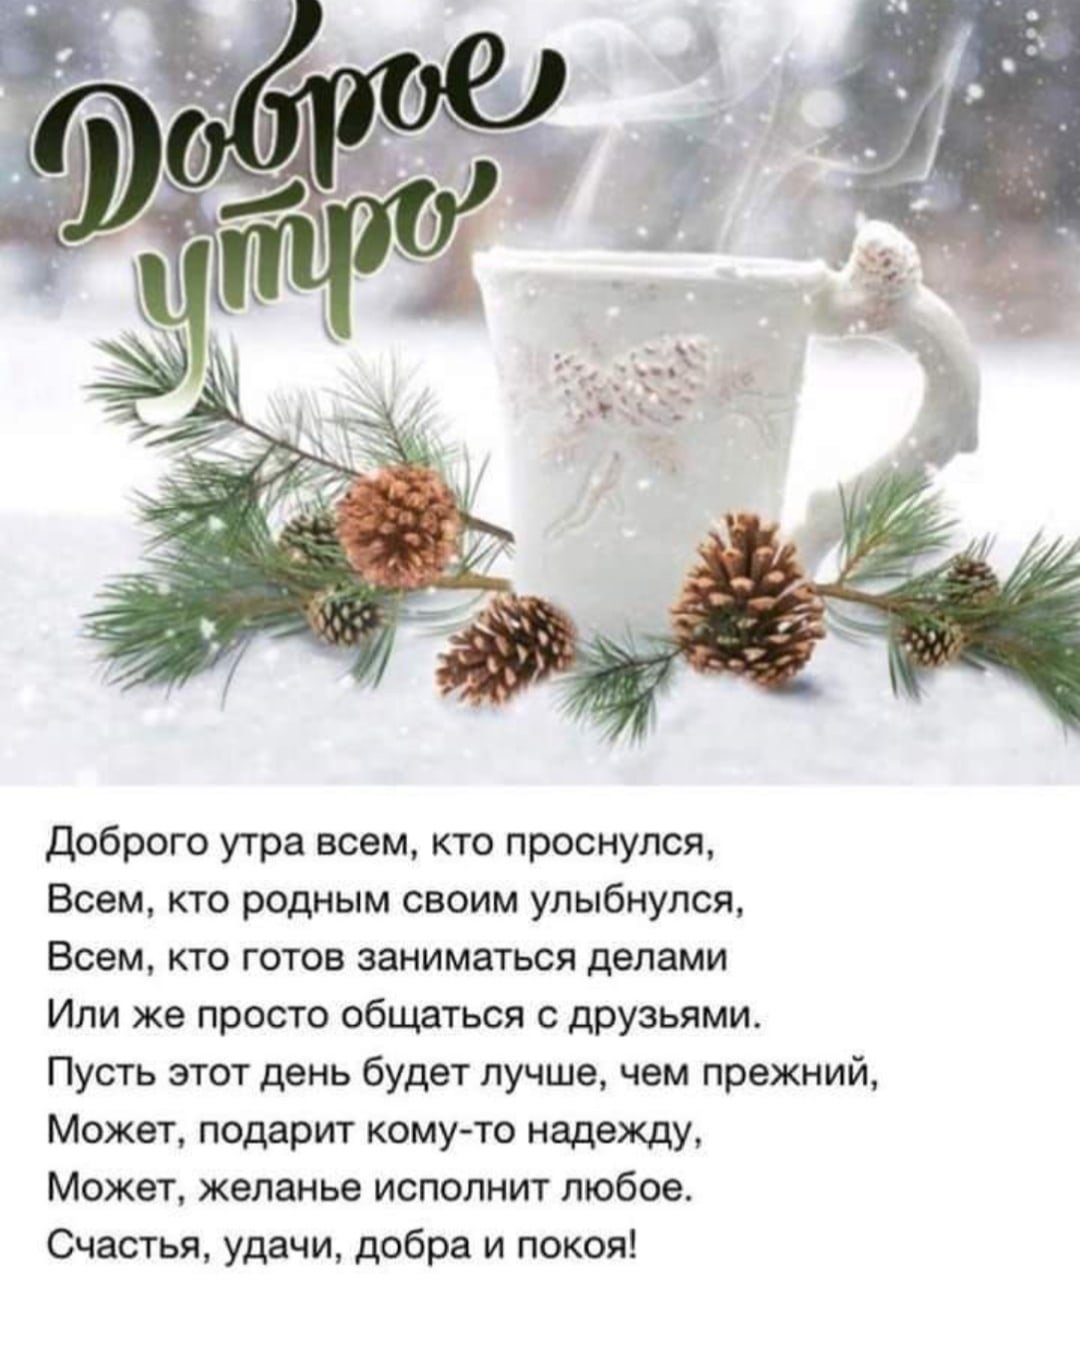 Пожелания морозного утра. Зимние поздравления с добрым утром. Пожелания с добрым утром зима. Красивое поздравление с зимним утром. Пожелания доброго зимнего утра.